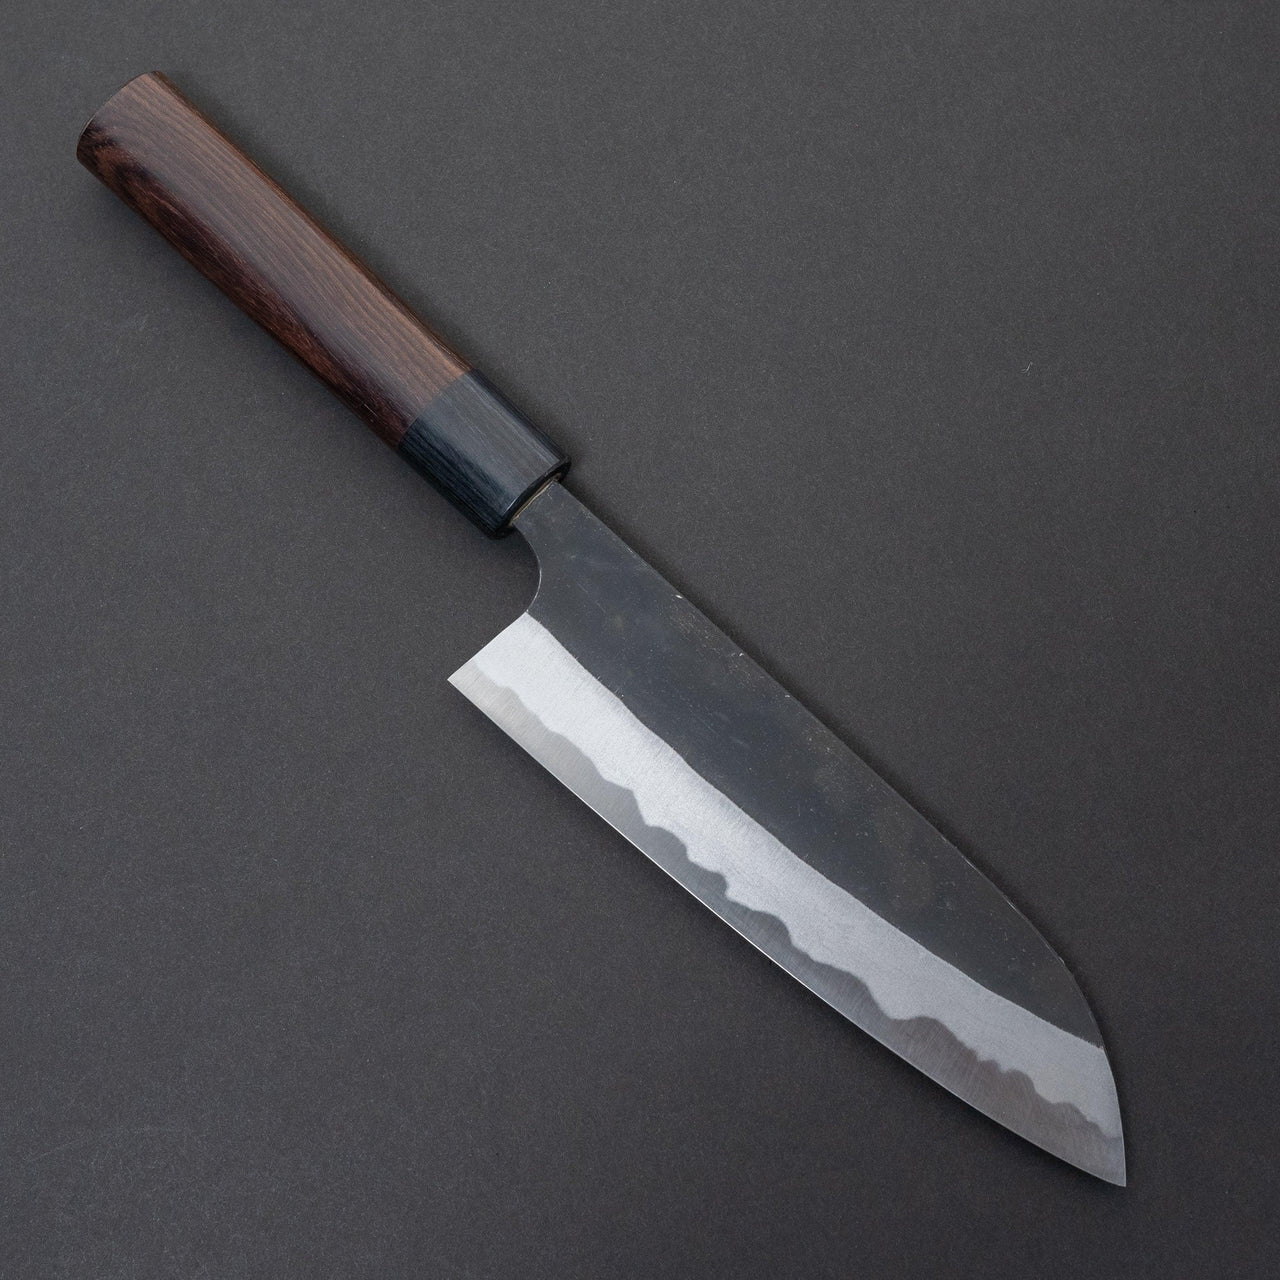 Kato AS Kurouchi Santoku 165mm-Knife-Yoshimi Kato-Carbon Knife Co